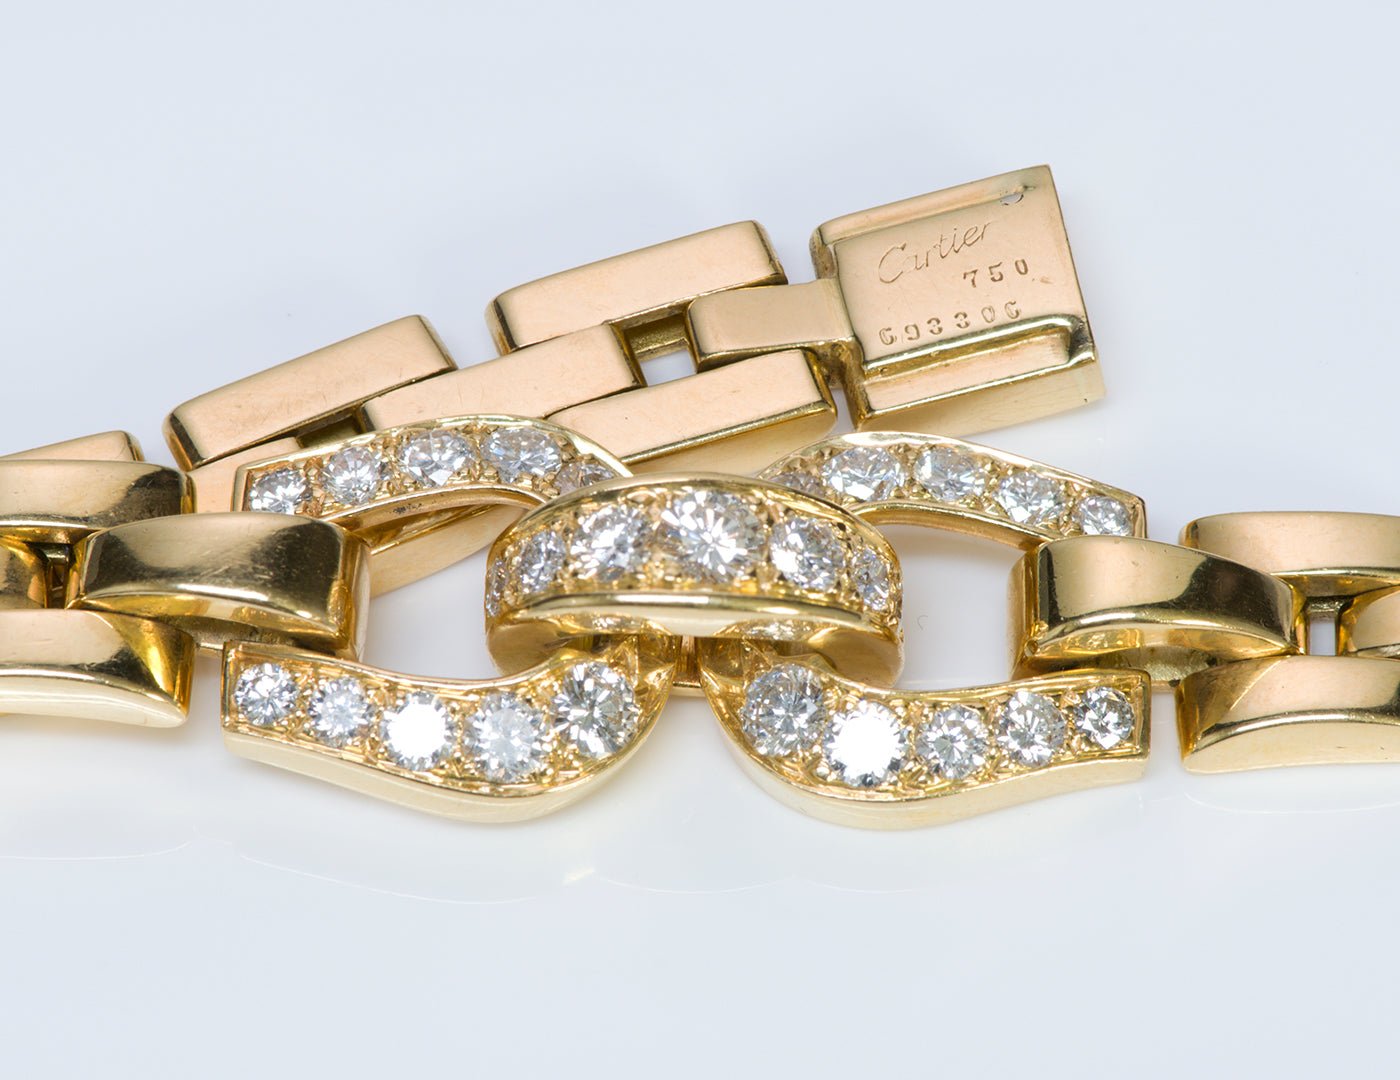 Cartier Panthere Maillon Diamond 18K Gold Necklace & Bracelet